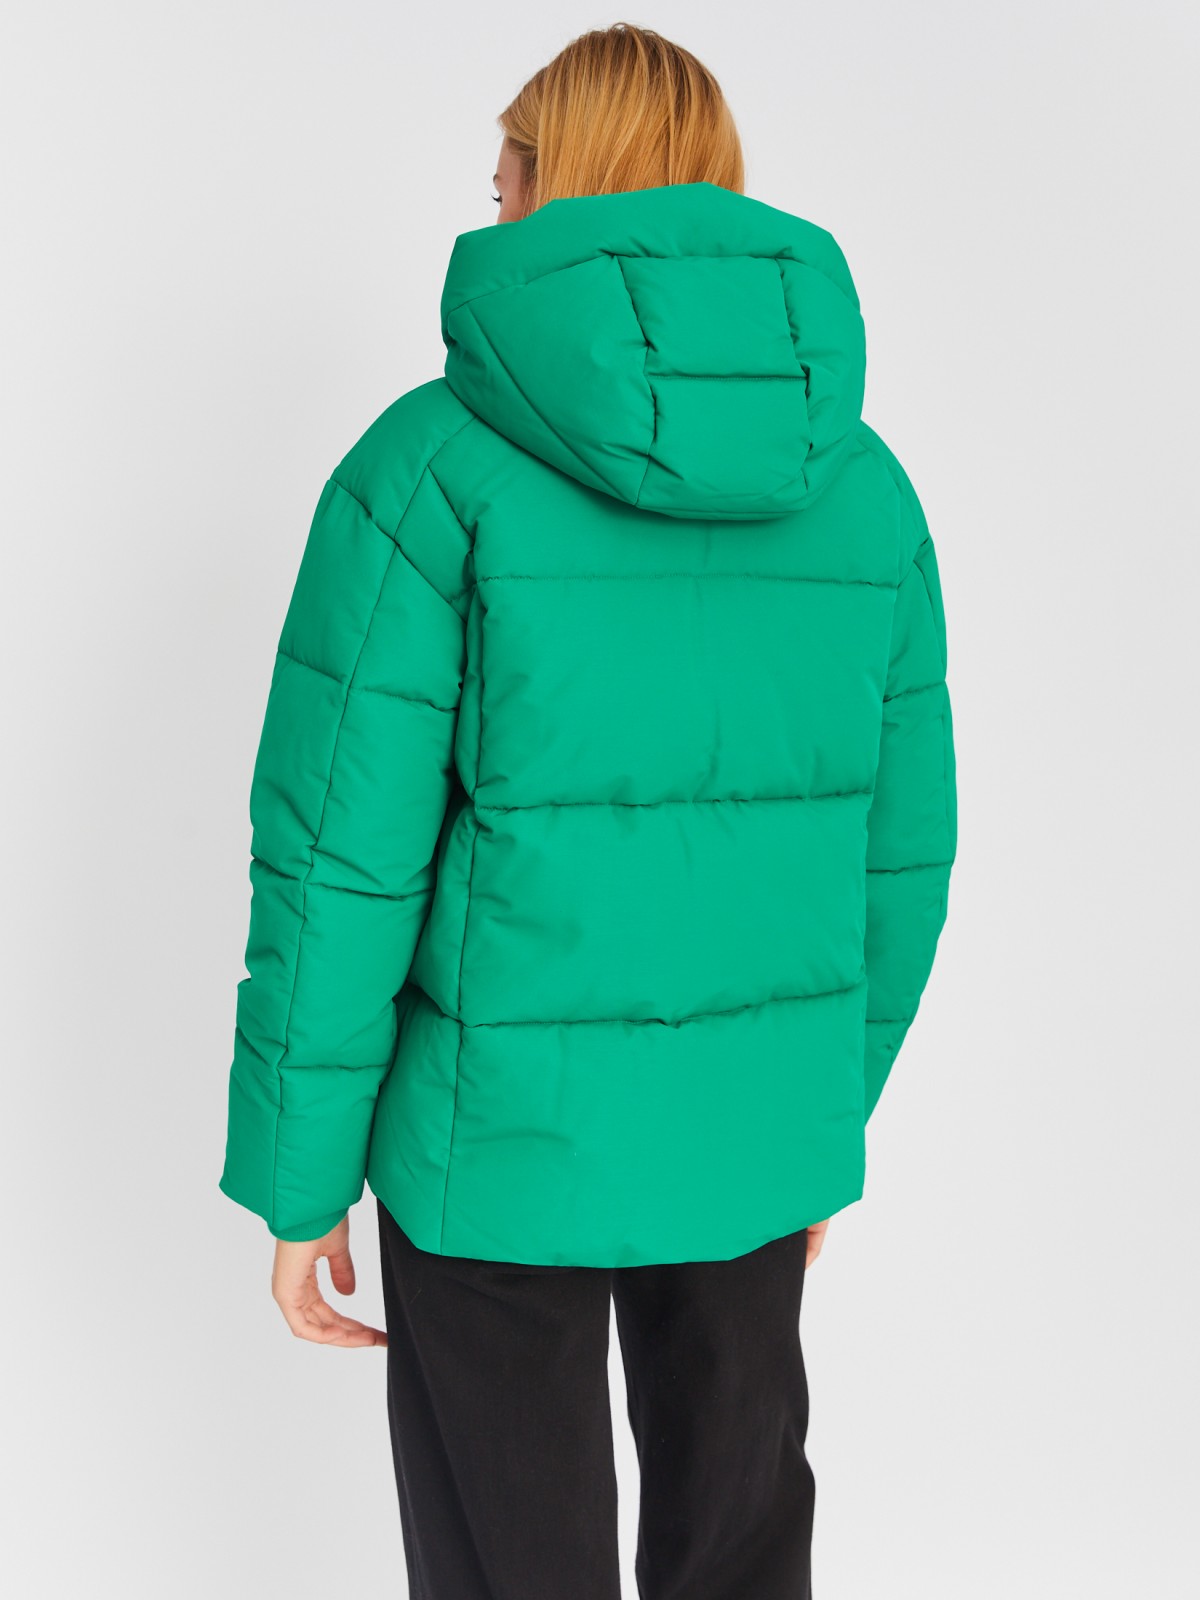 Тёплая стёганая куртка с капюшоном и удлинёнными внутренними манжетами zolla 023335112274, цвет зеленый, размер M - фото 6